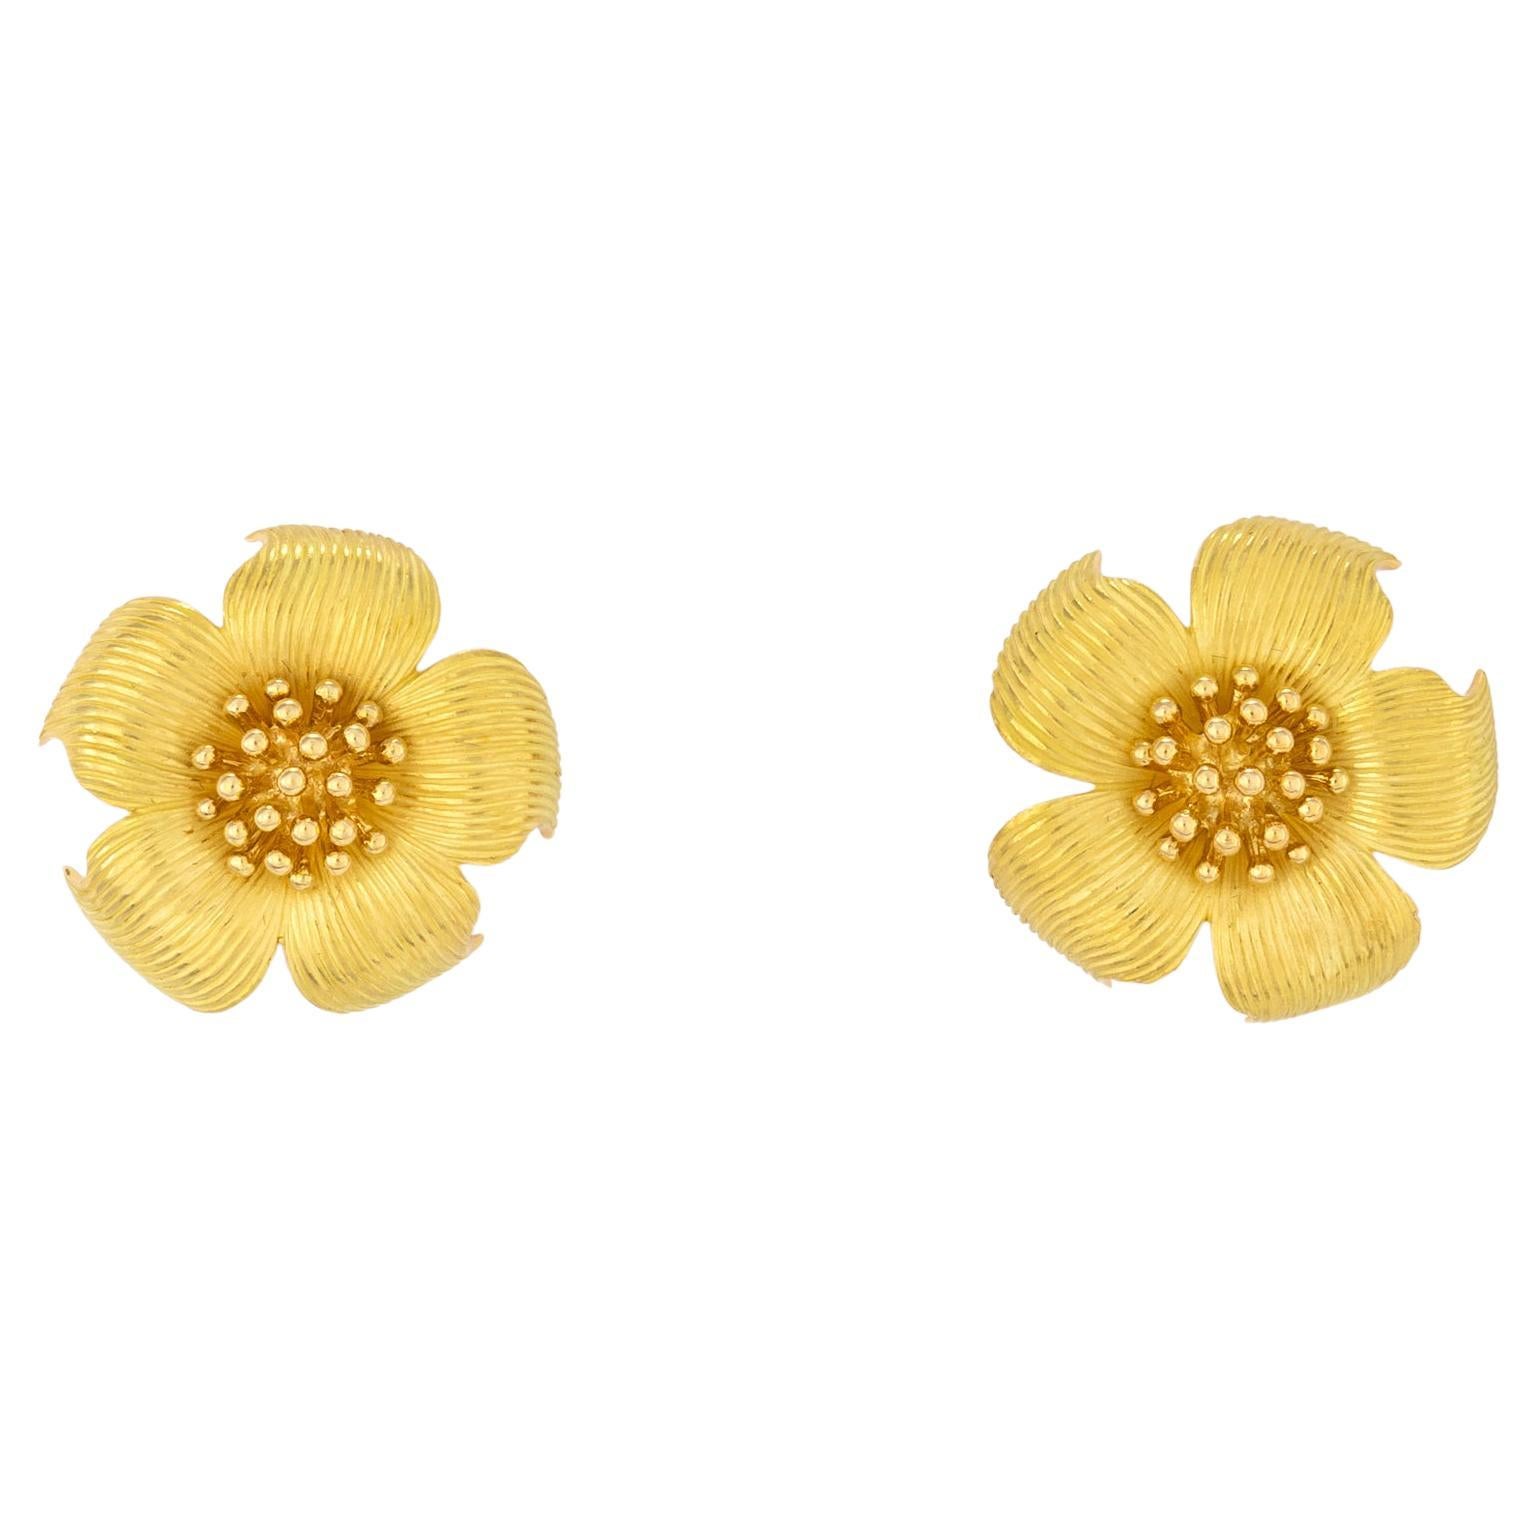 Tiffany & Co. Flower Motif Earrings